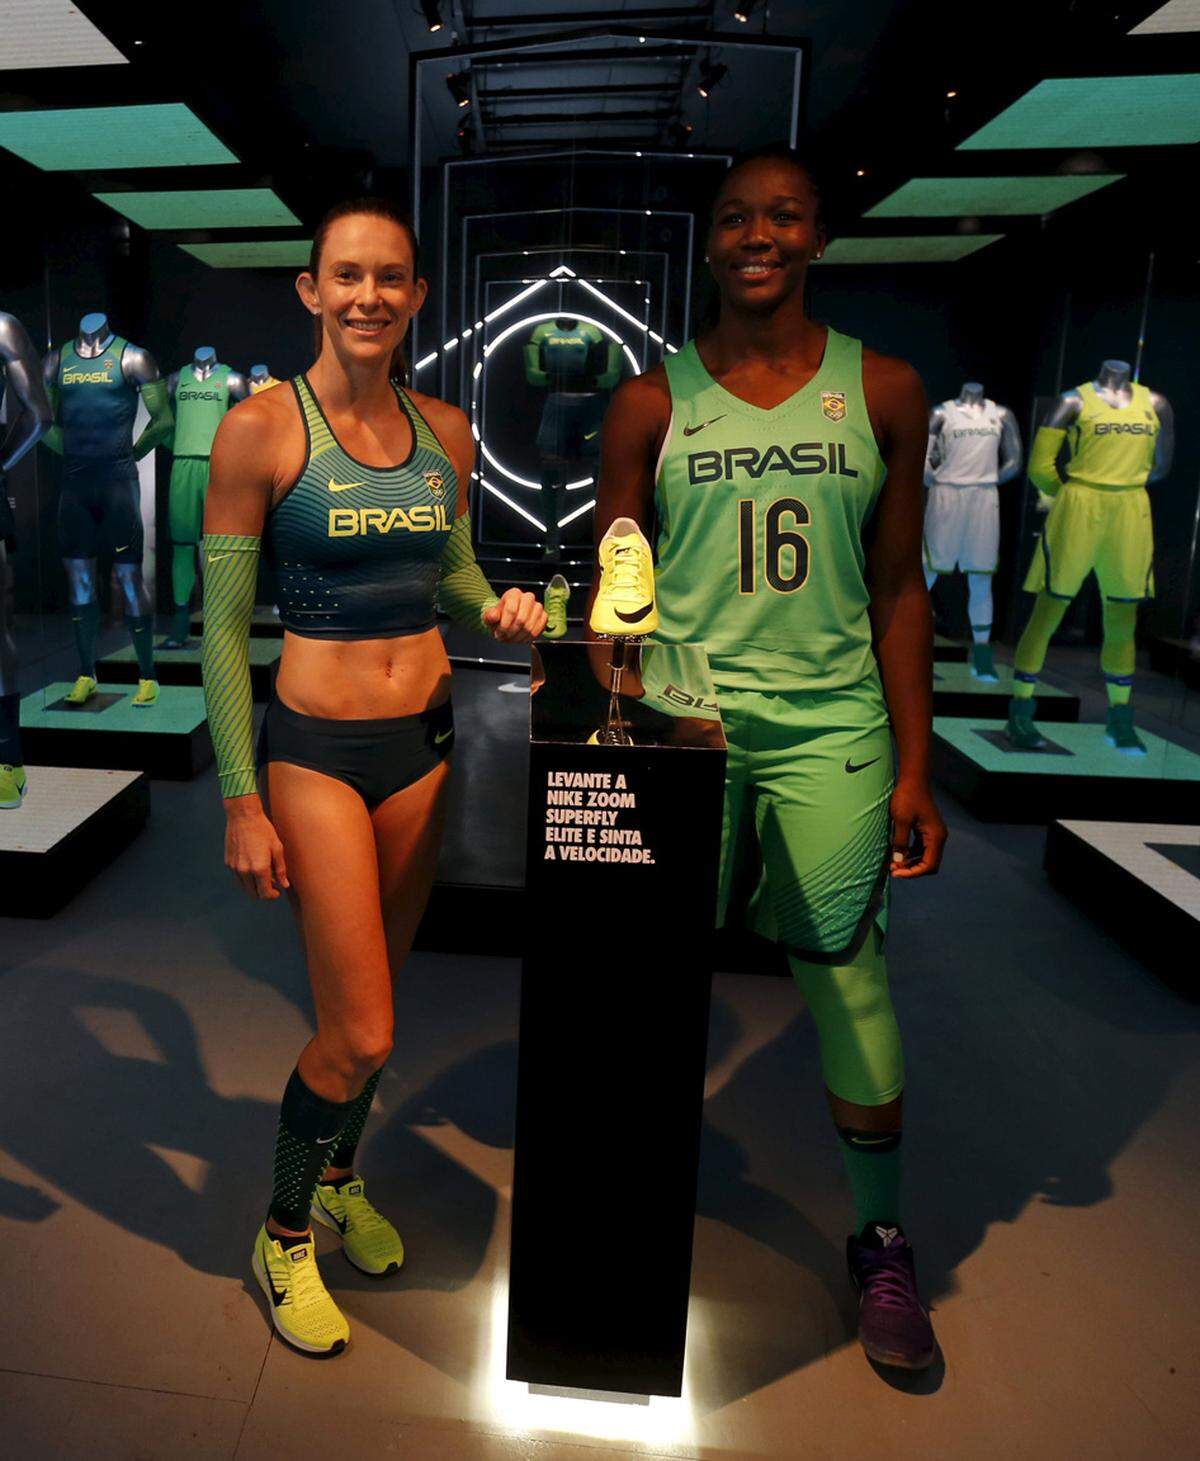 Die Farbe Grün ist bei den Uniformen des brasilianischen Teams vorherrschend.  